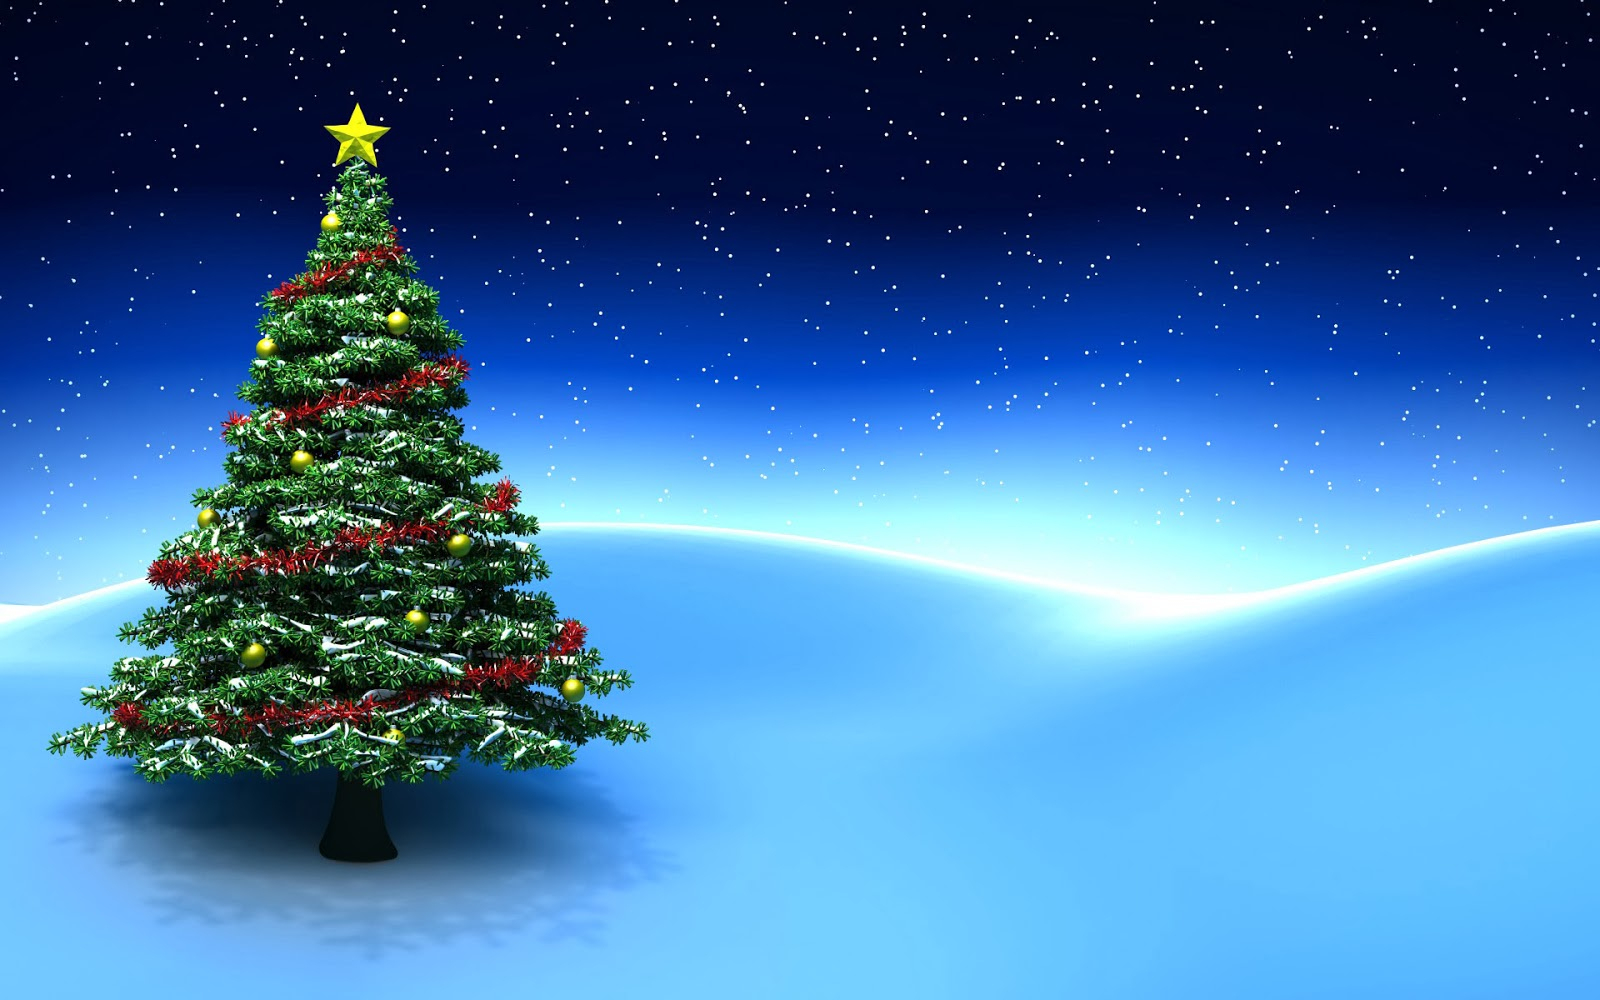 Hintergrundbilder Kostenlos Winter Weihnachten über Weihnachten Hintergrund Gratis